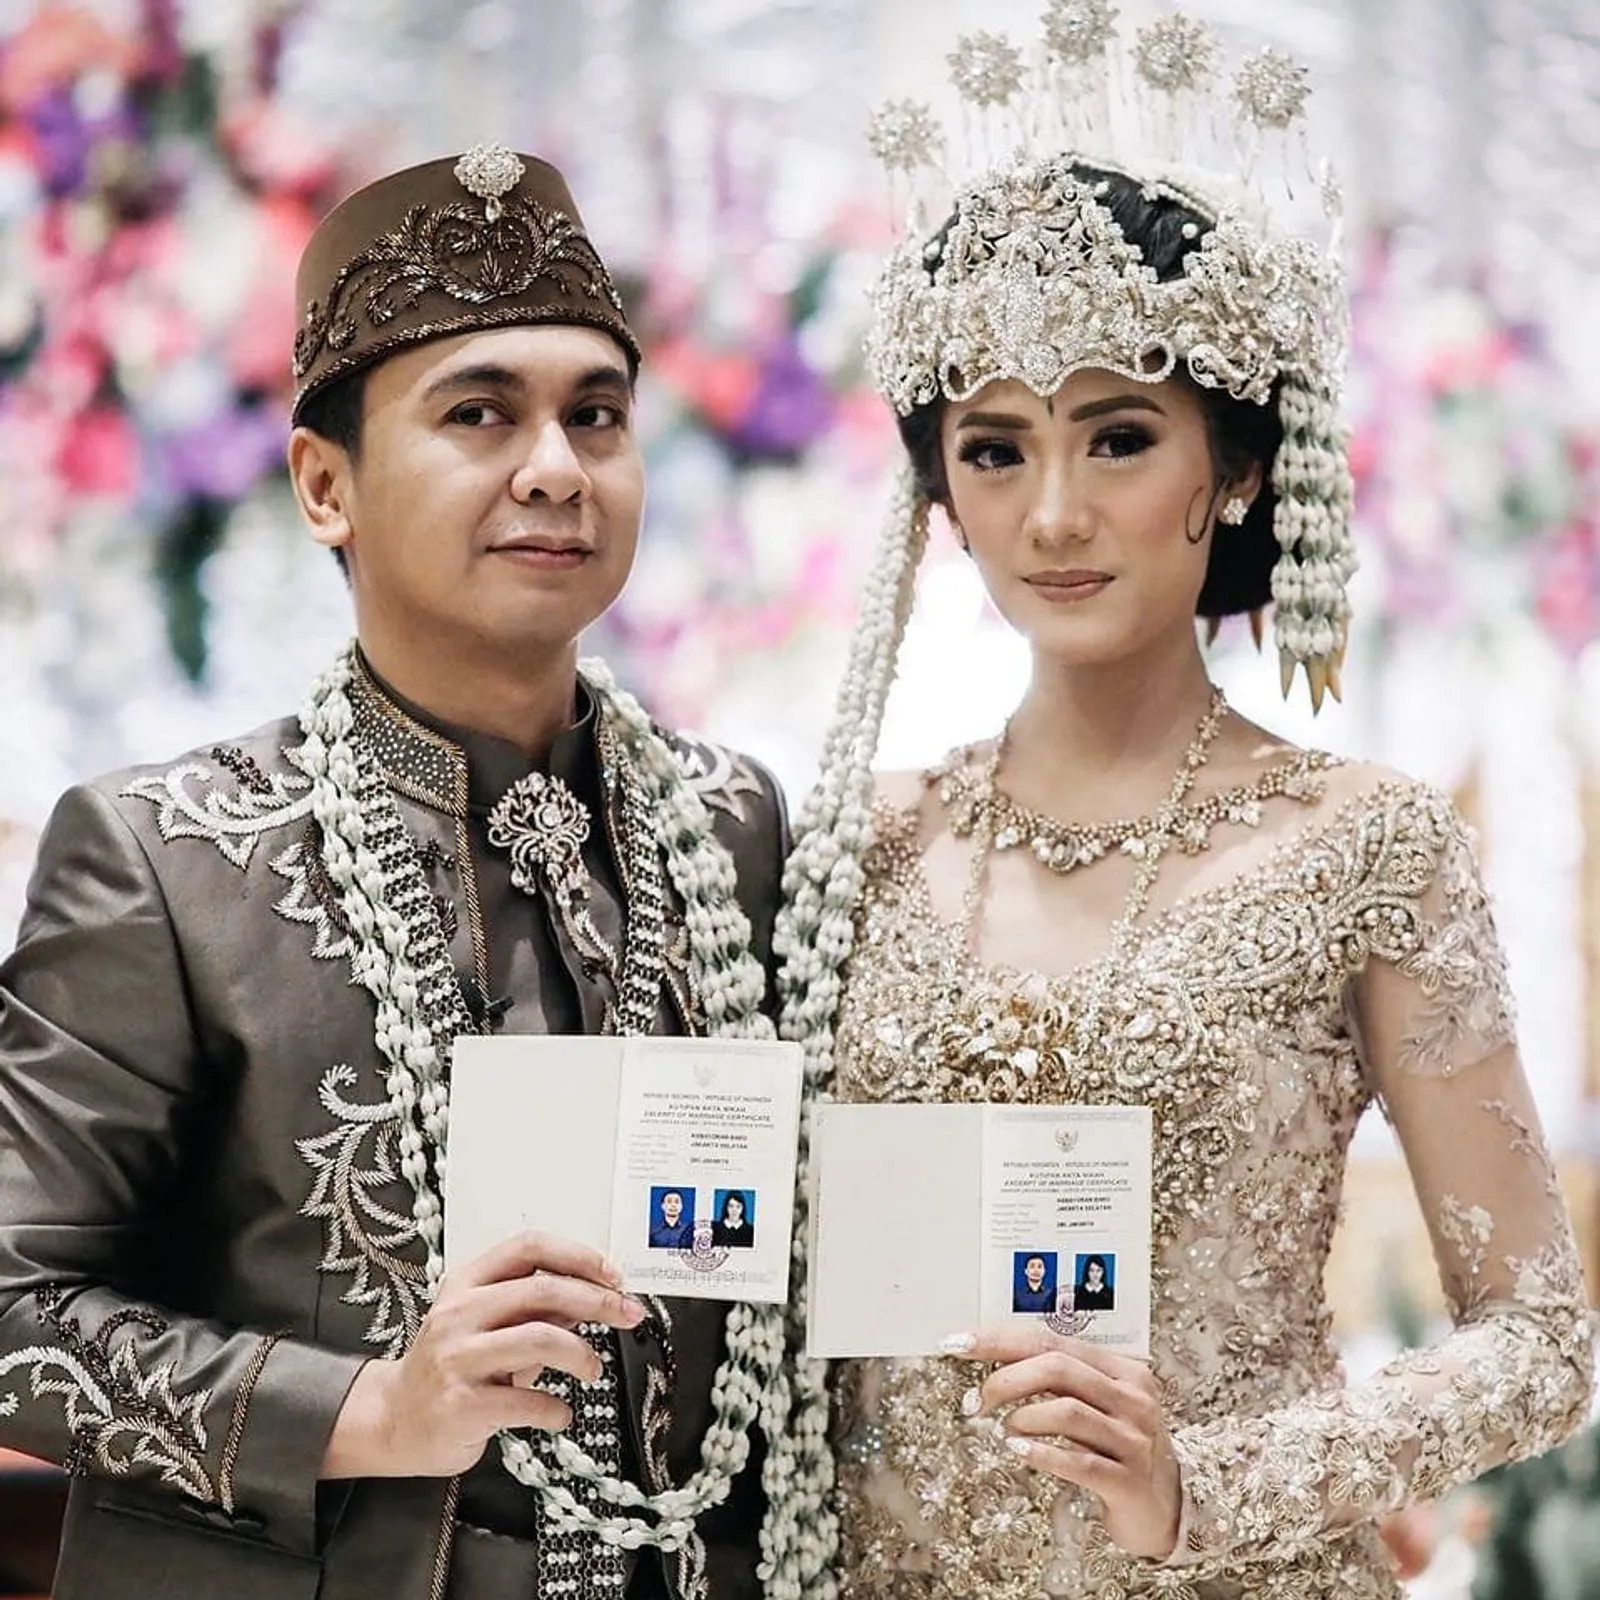 Foto Jokowi Ini Paling Dicintai di Instagram tahun 2018, Artis Kalah